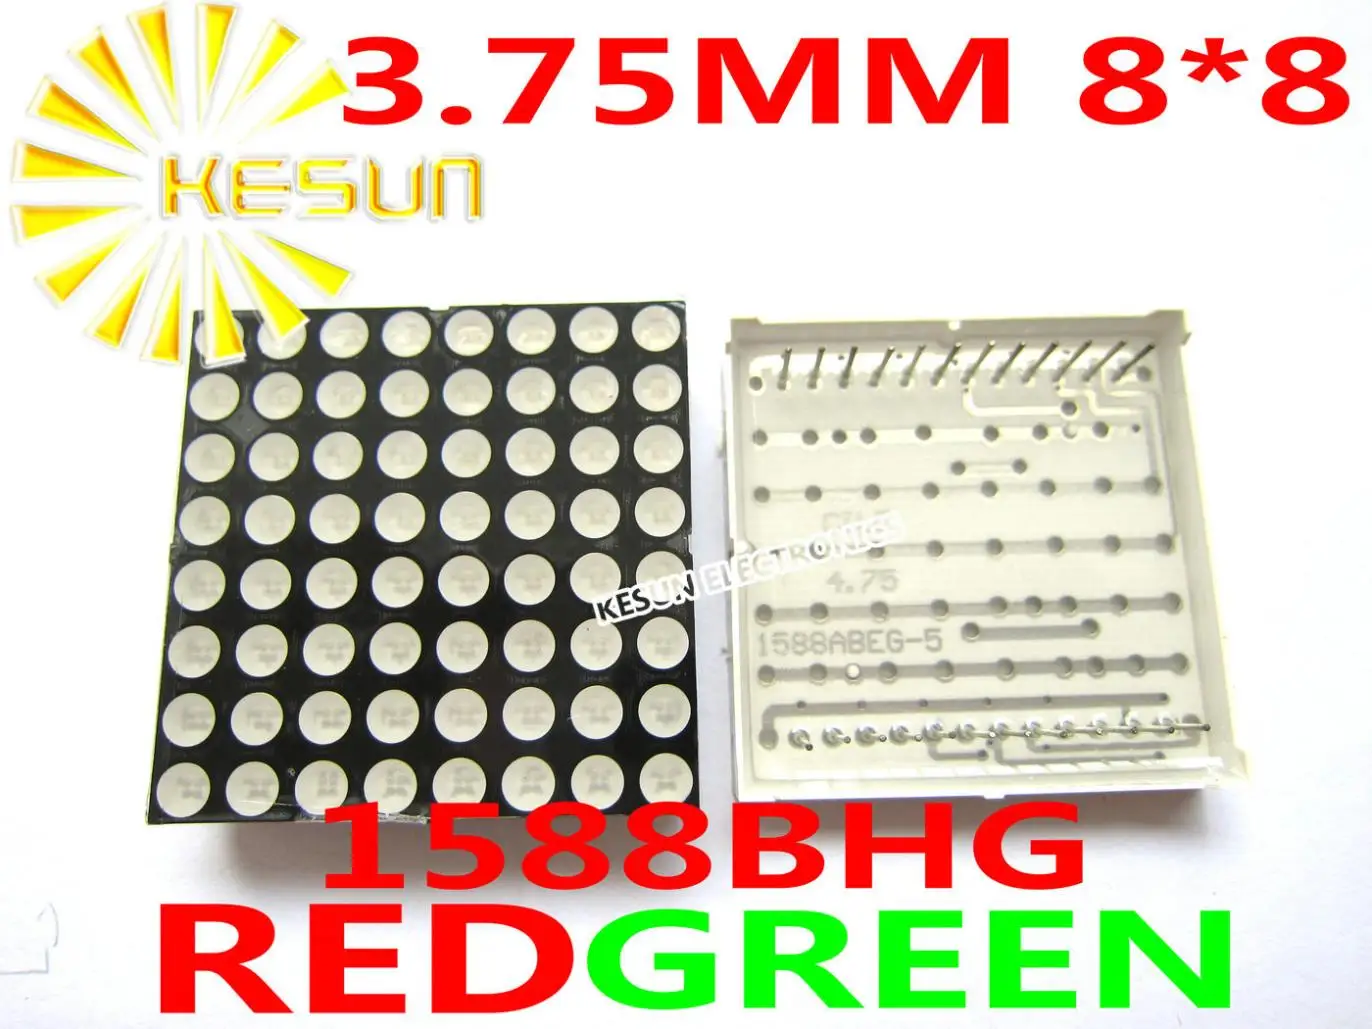 10 шт. x 3,75 мм 8X8 красный зеленый двухцветный общий анод 38*38 СВЕТОДИОДНЫЙ матричный цифровой модуль 1588BHG дисплей модуль